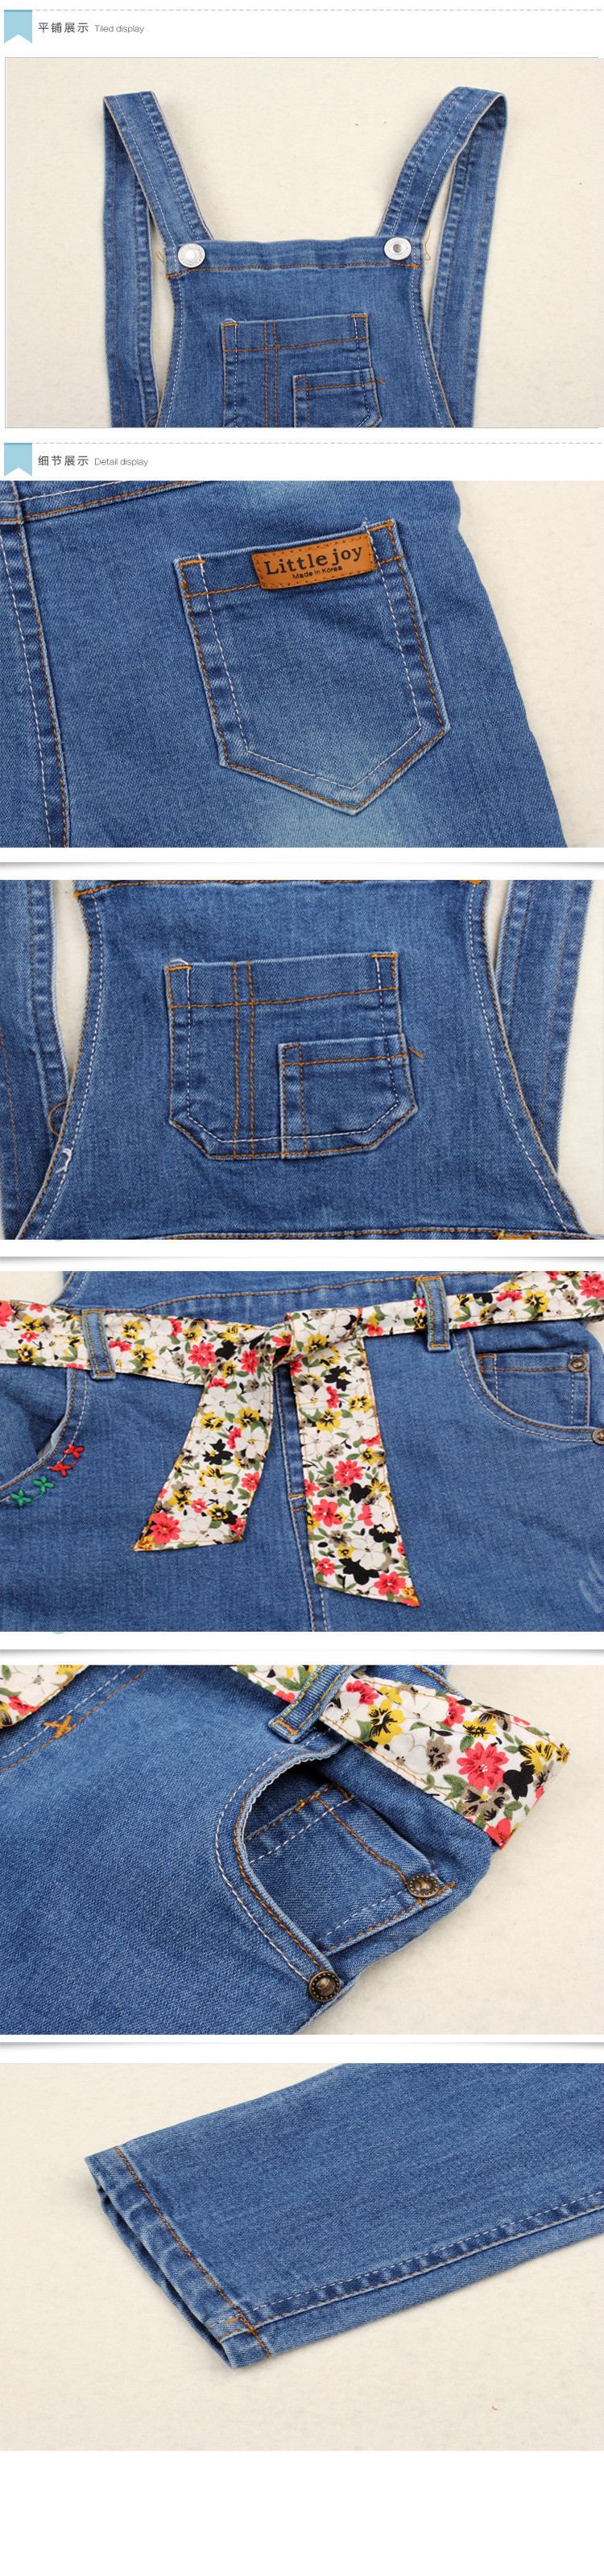 Autumn Spring Korean Style Jeans Baby Girls Clothes Children Denim Overalls Girls Fashion Salopette with Belt (8)